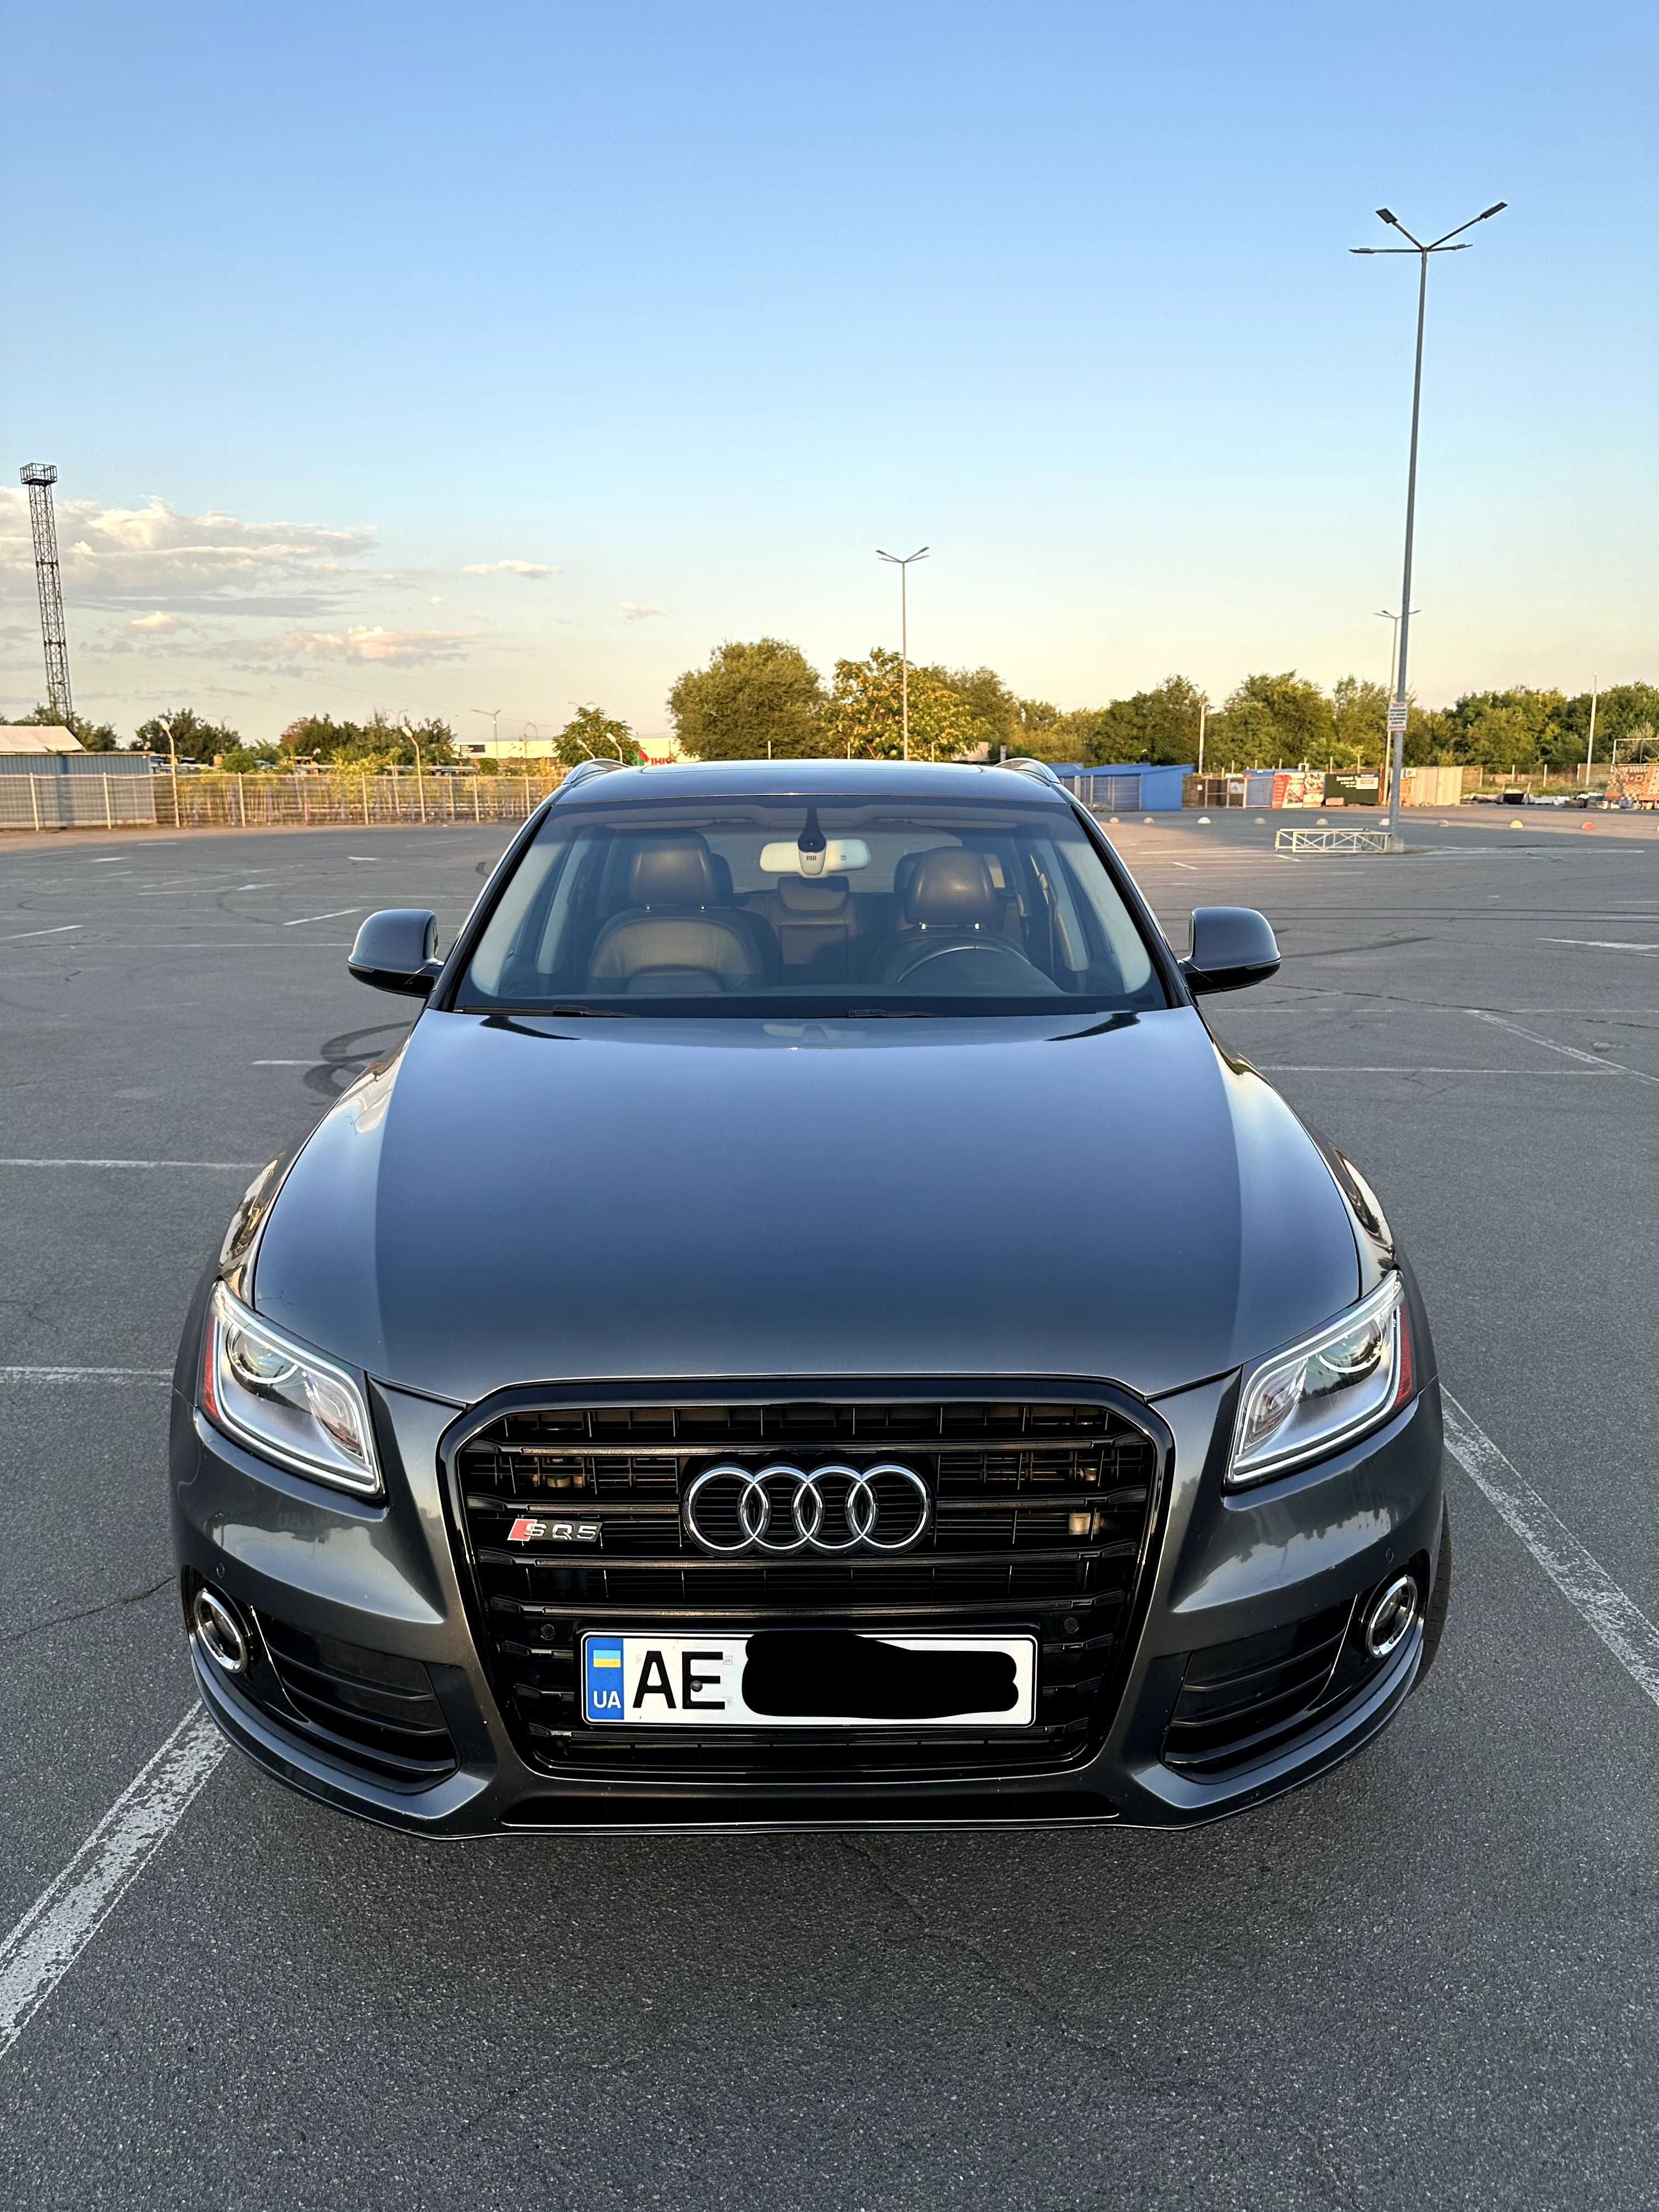 Audi Q5 2015 Premium Plus